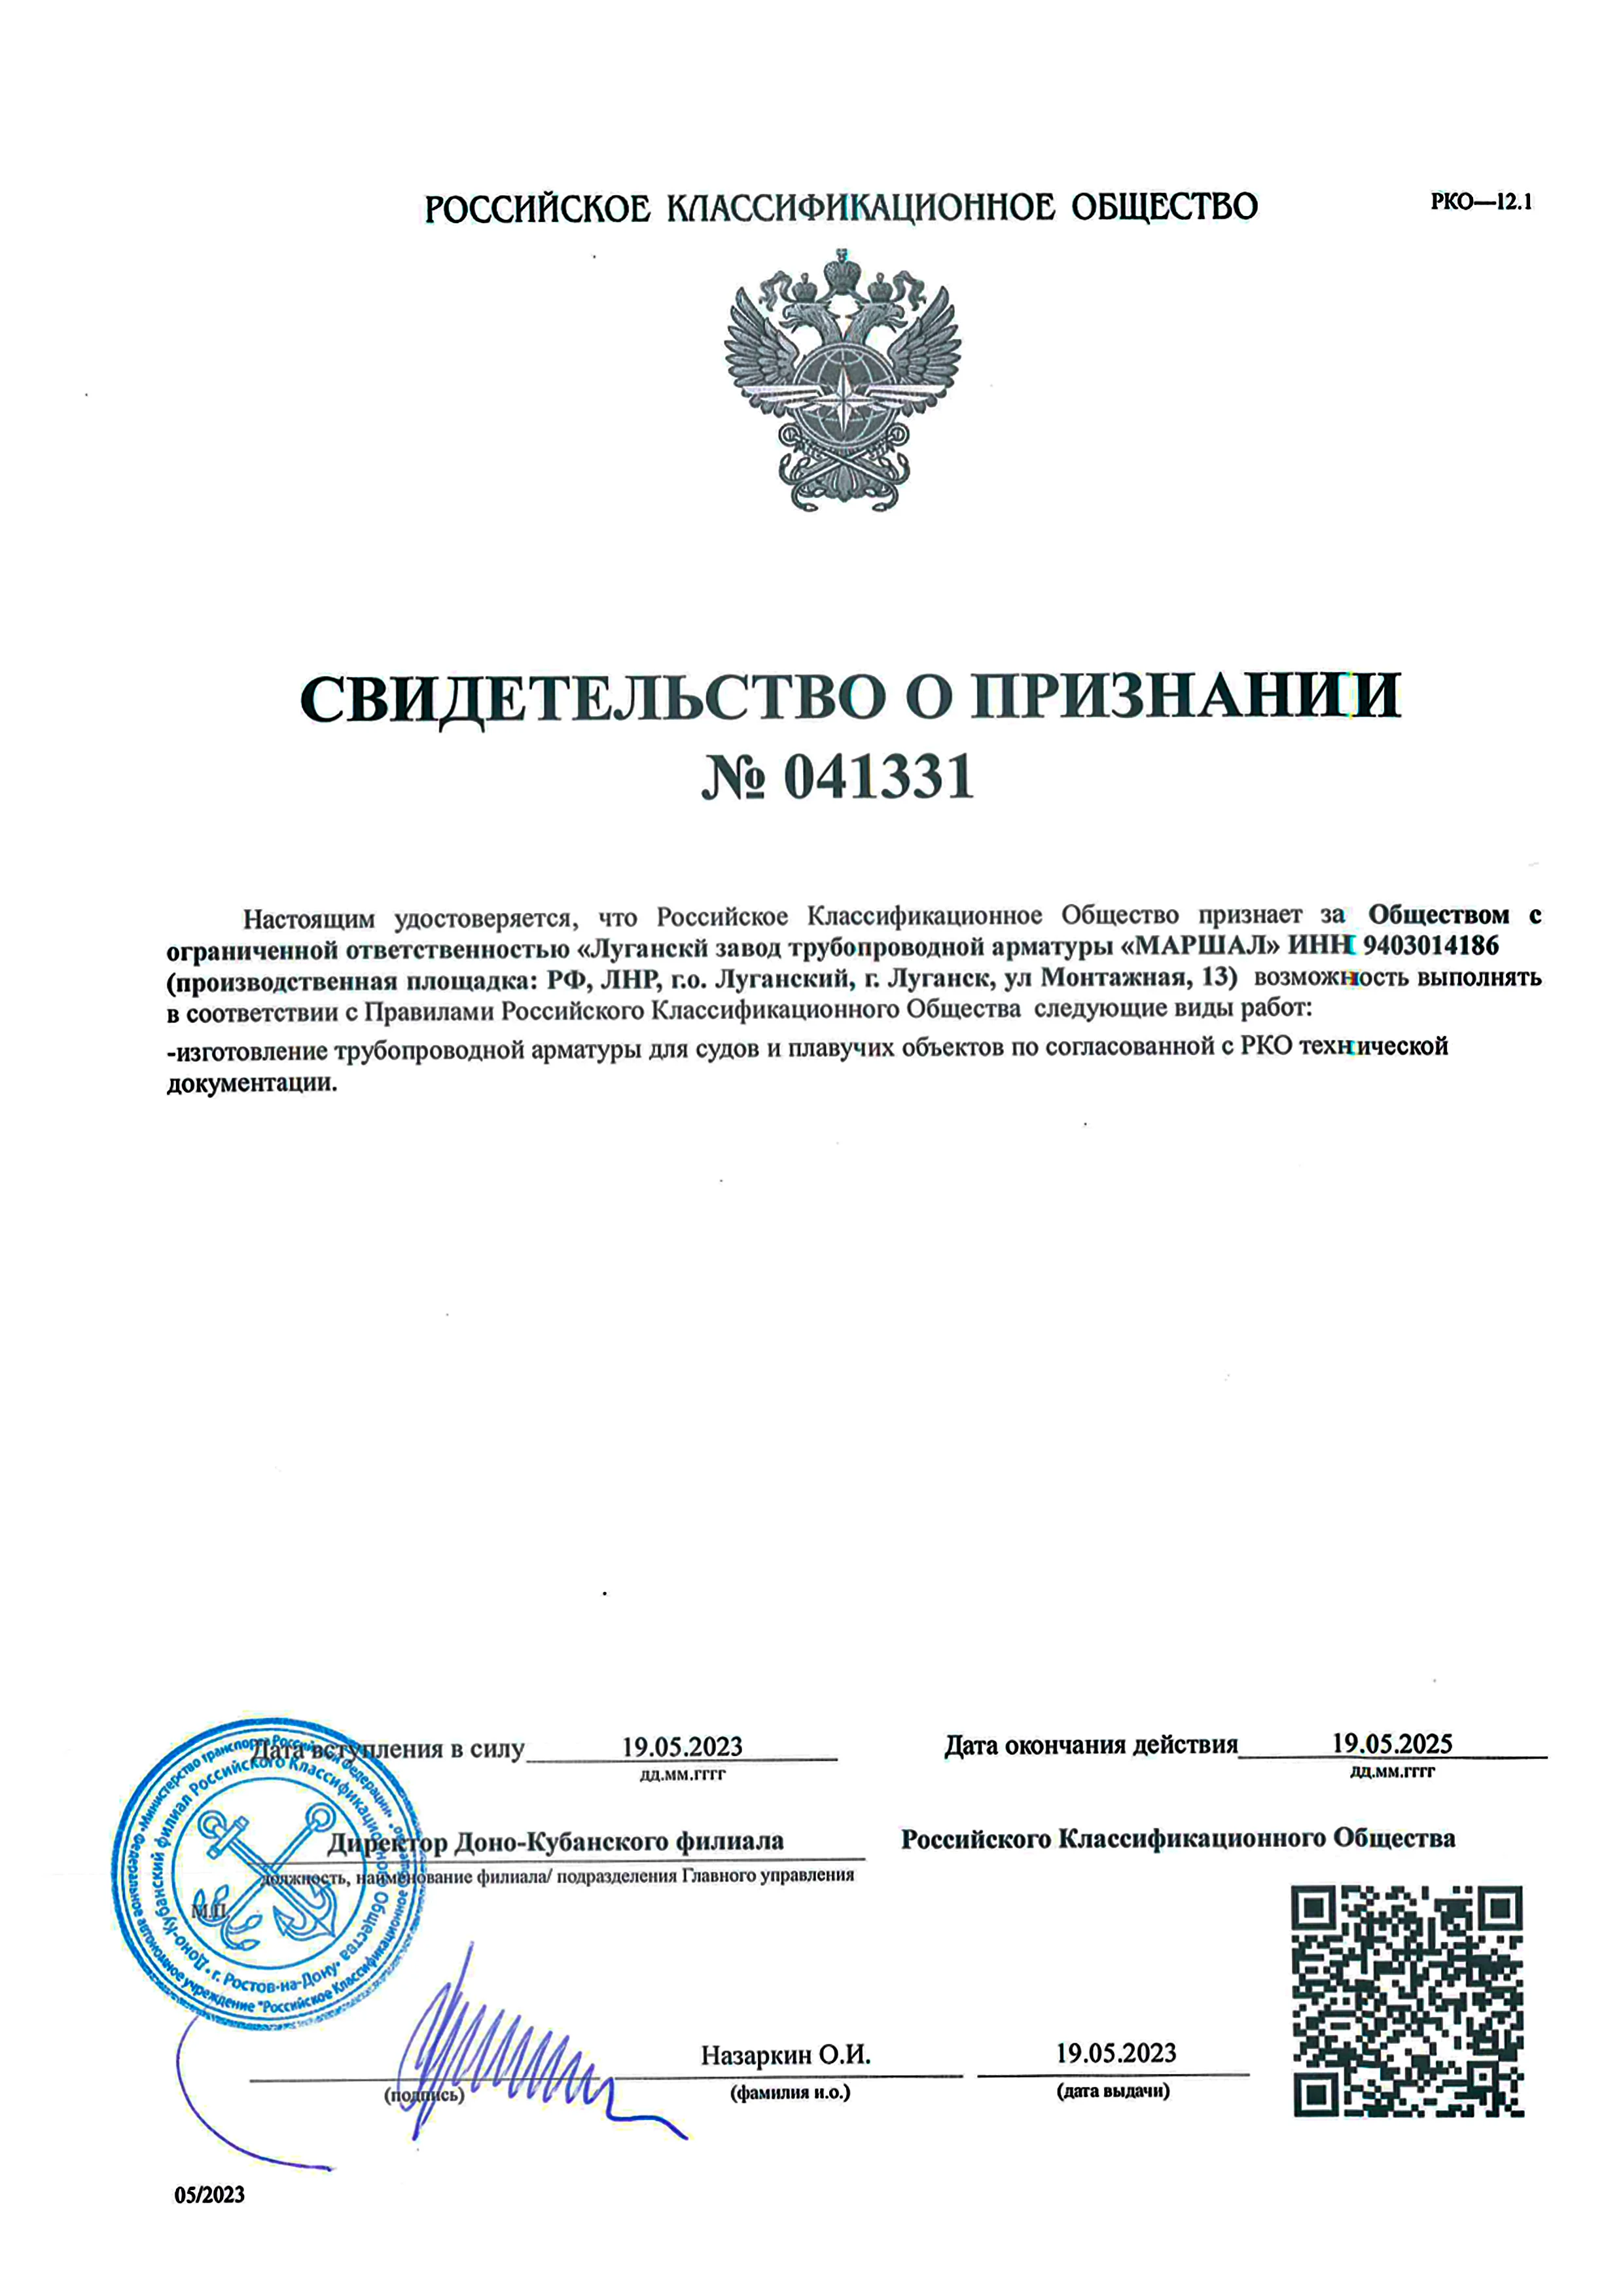 Свидетельство и признании Российский Речной Регистр